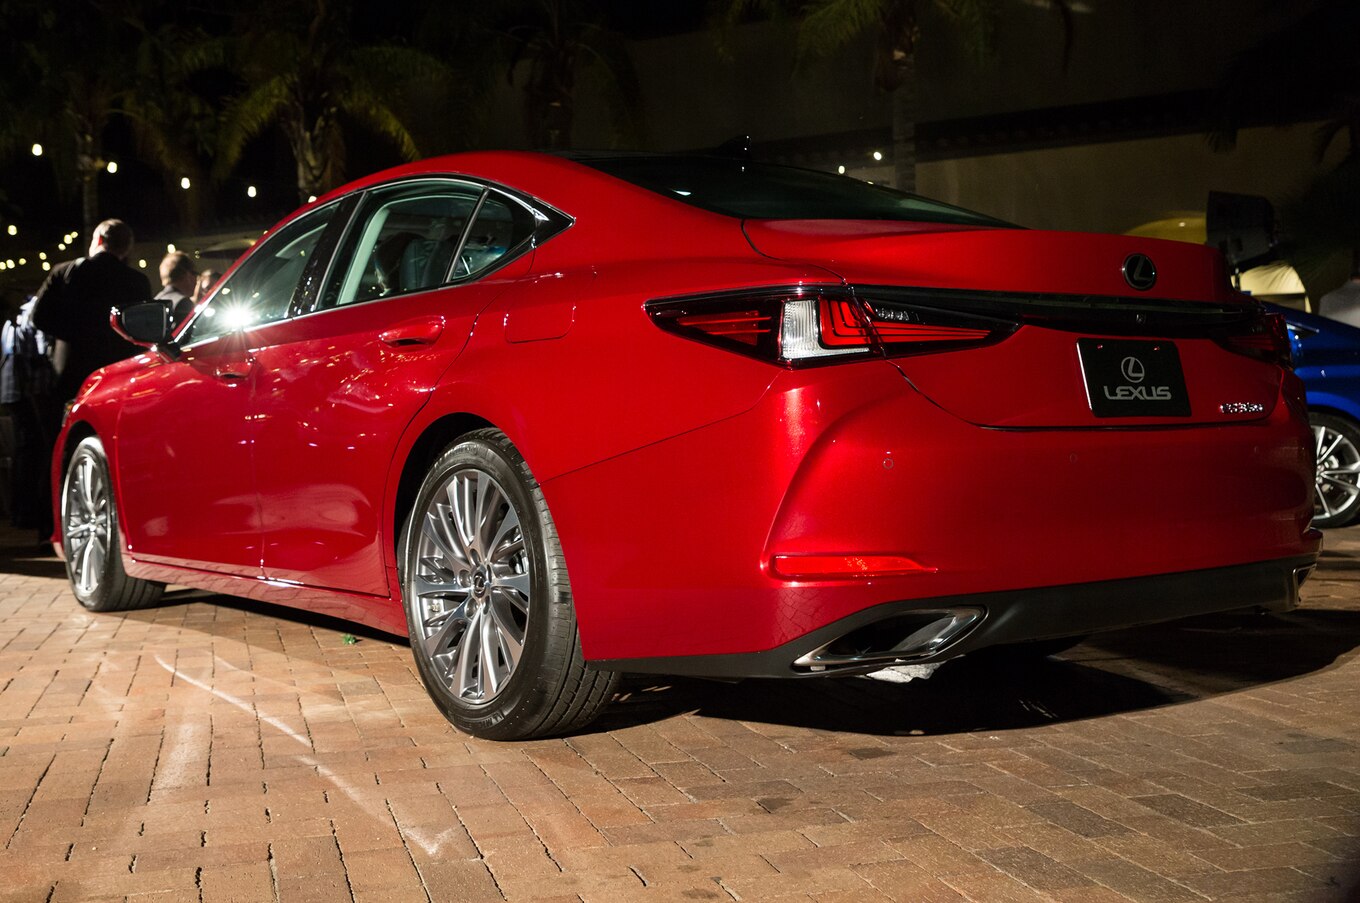 2019-Lexus-ES-rear-side-view-in-red.jpg